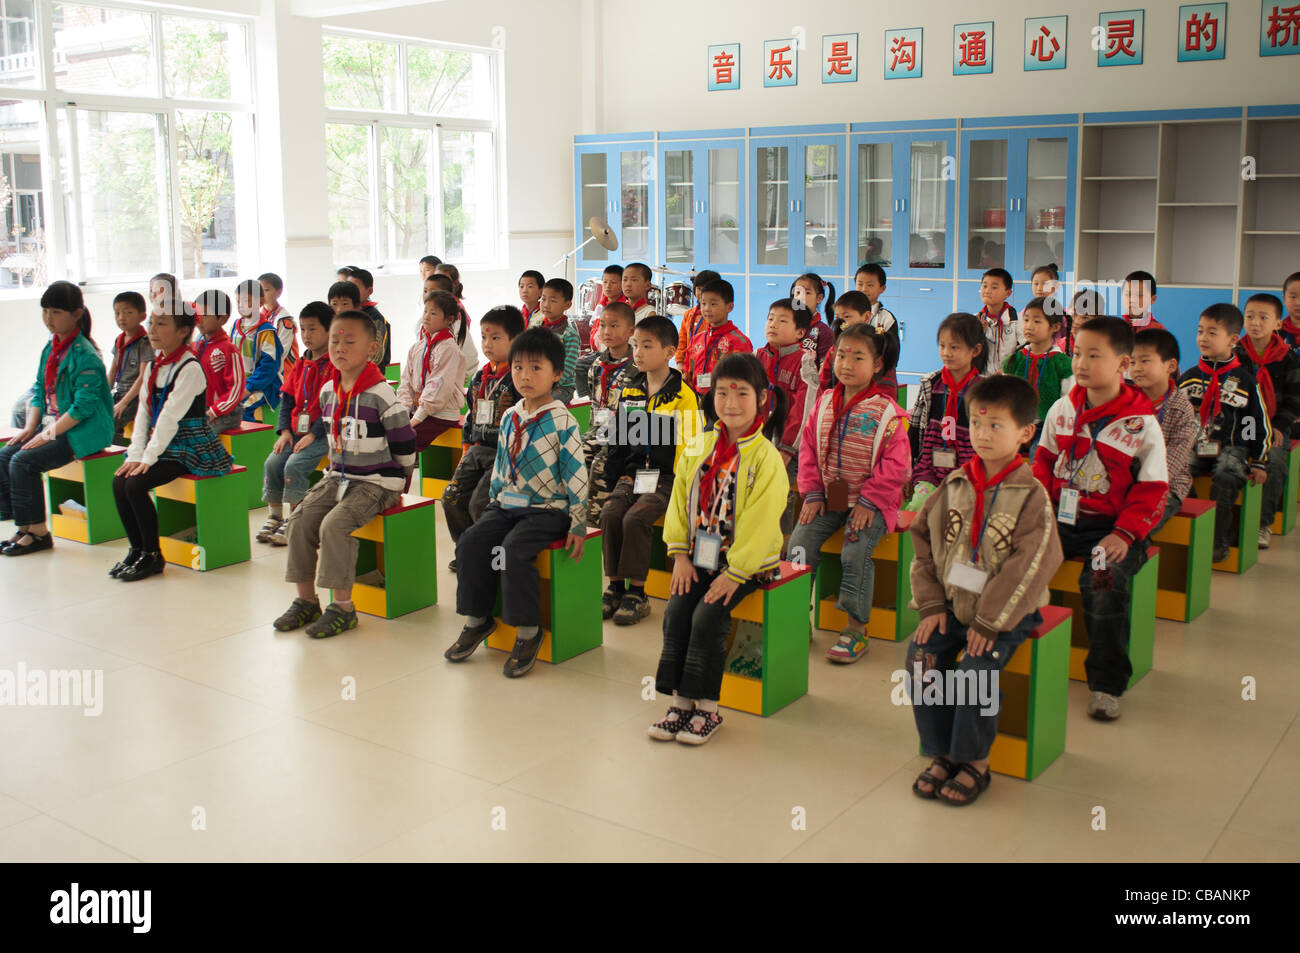 Les enfants fréquentent l'école primaire en classe, Village de Huaxi, Jiangsu, Chine Banque D'Images